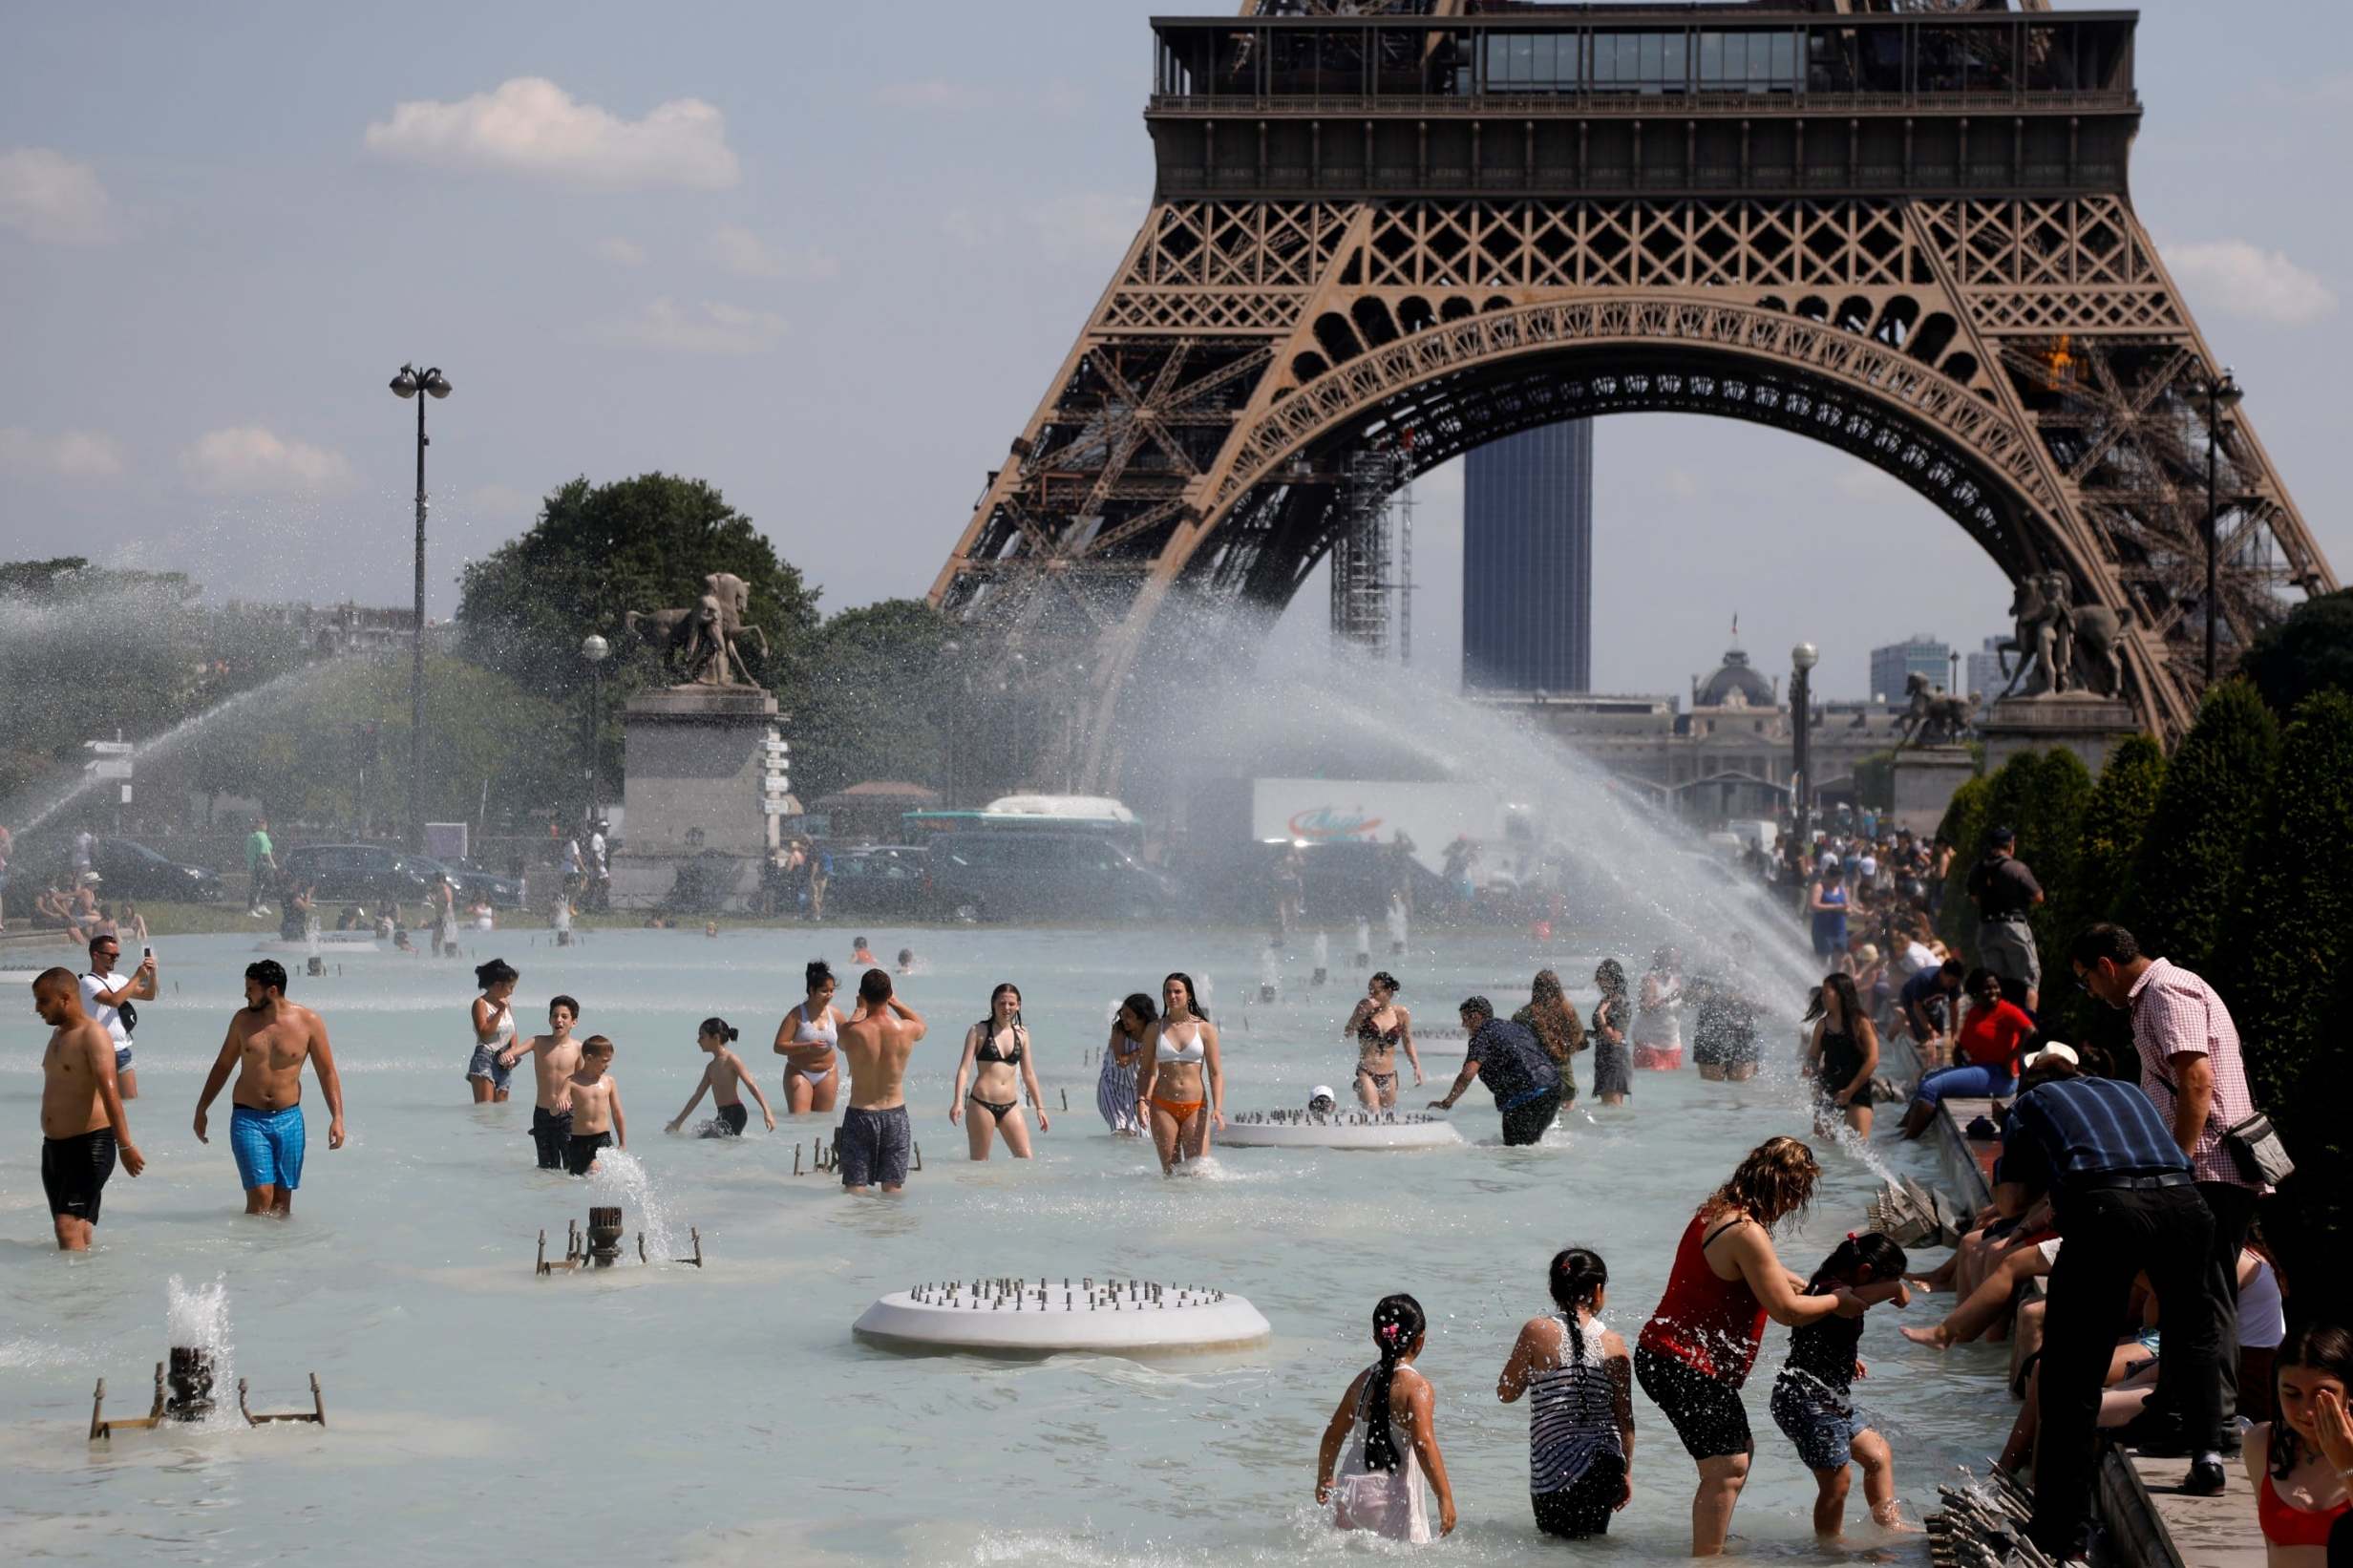 Самая жаркая страна в этом году. Аномальная жара в Европе 2003. Аномальная жара во Франции 2003. Жара во Франции 2019. Париж 2003 год аномальная жара.